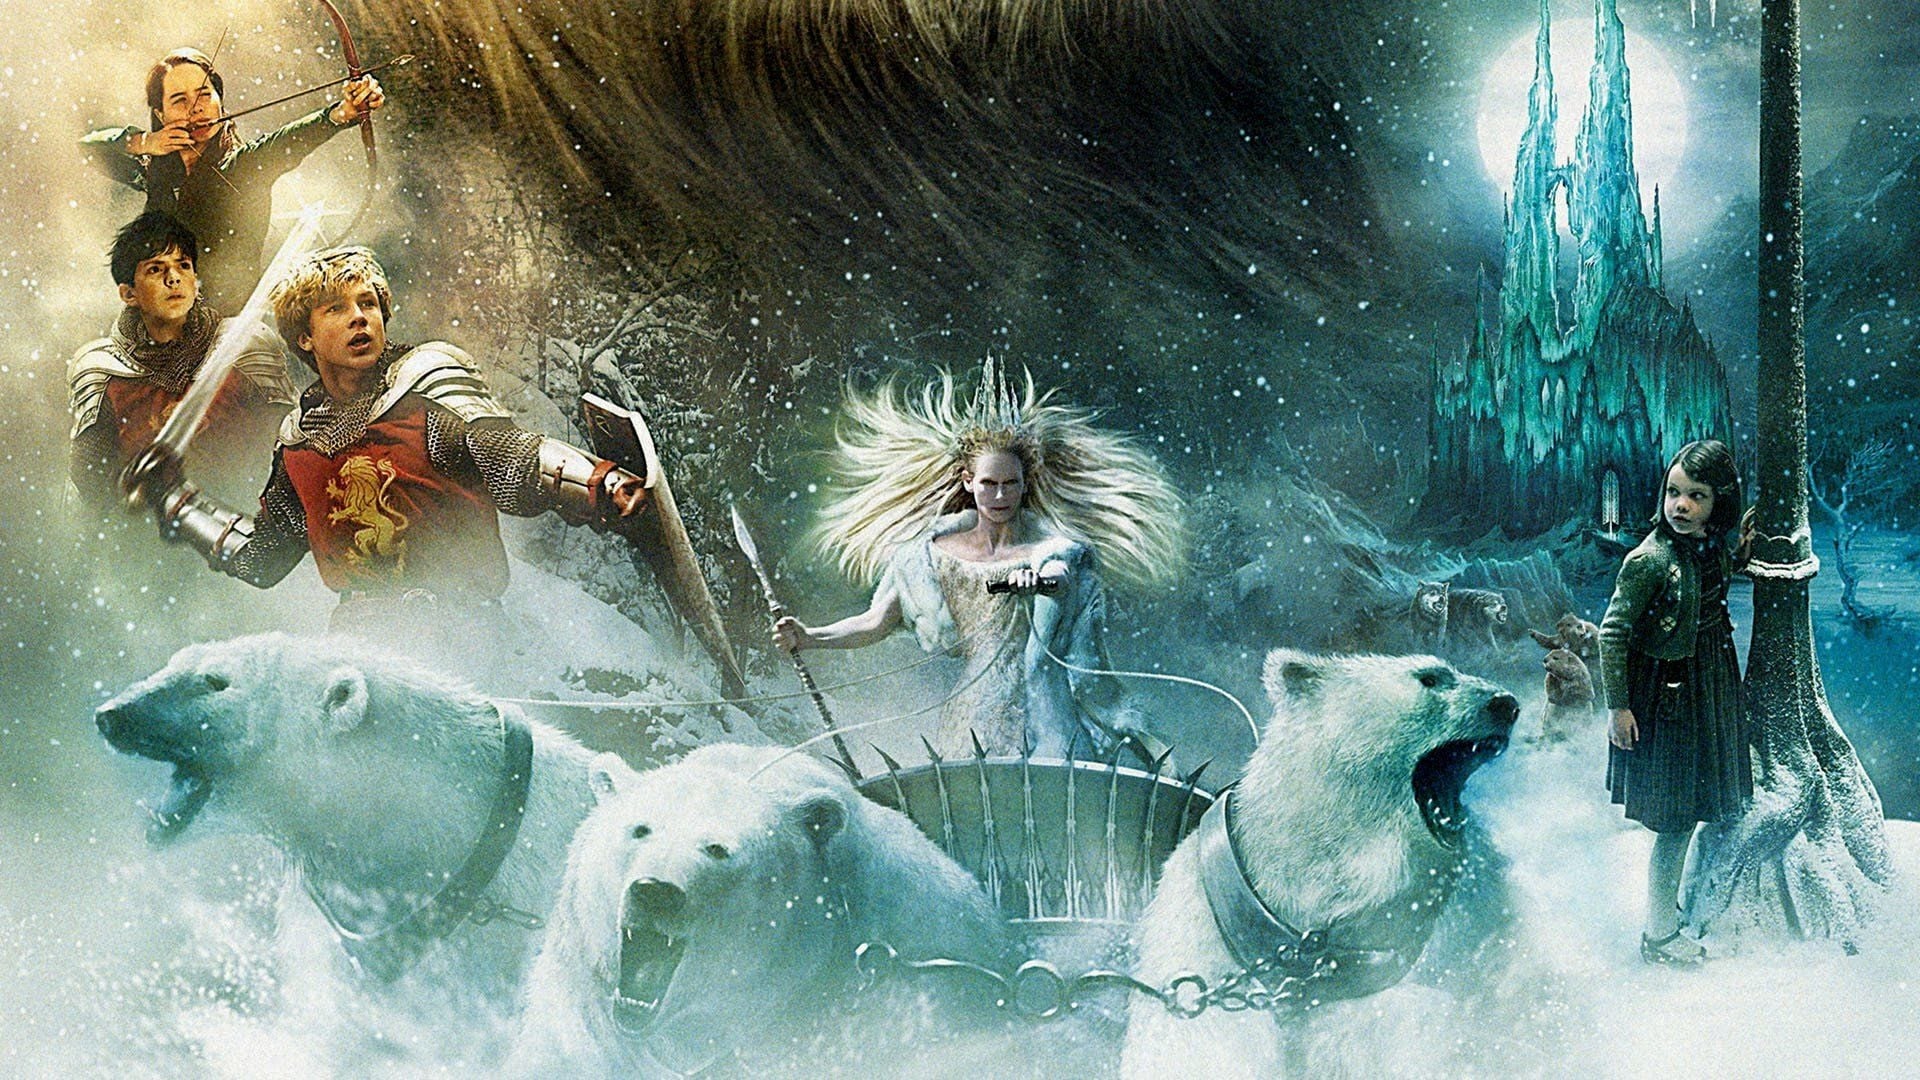 Narnia Günlükleri: Aslan, Cadı ve Dolap (2005)